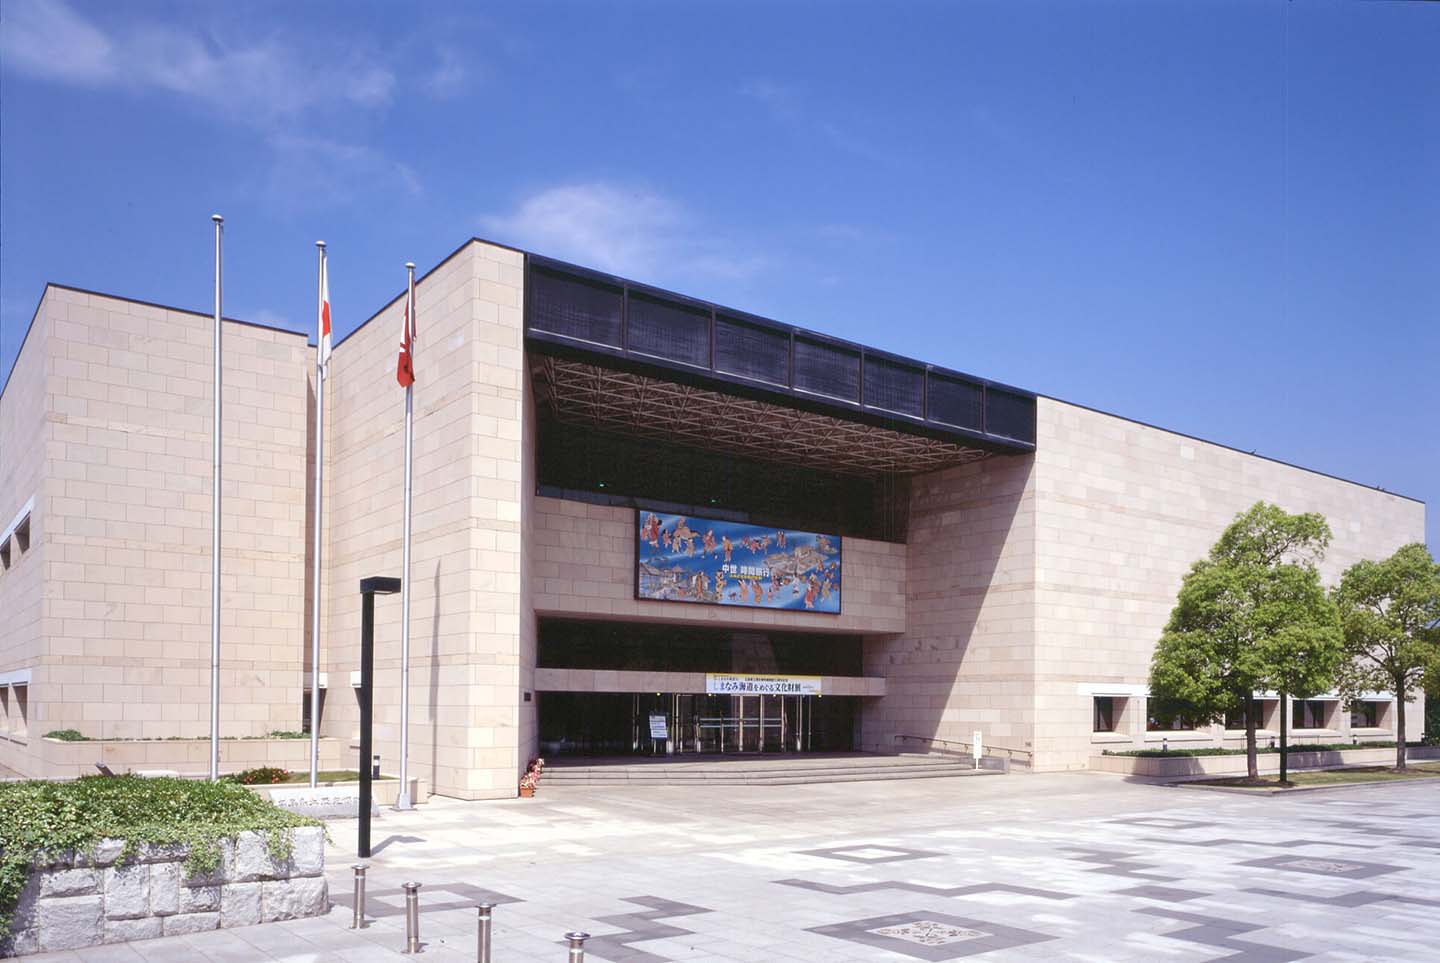 県立歴史博物館